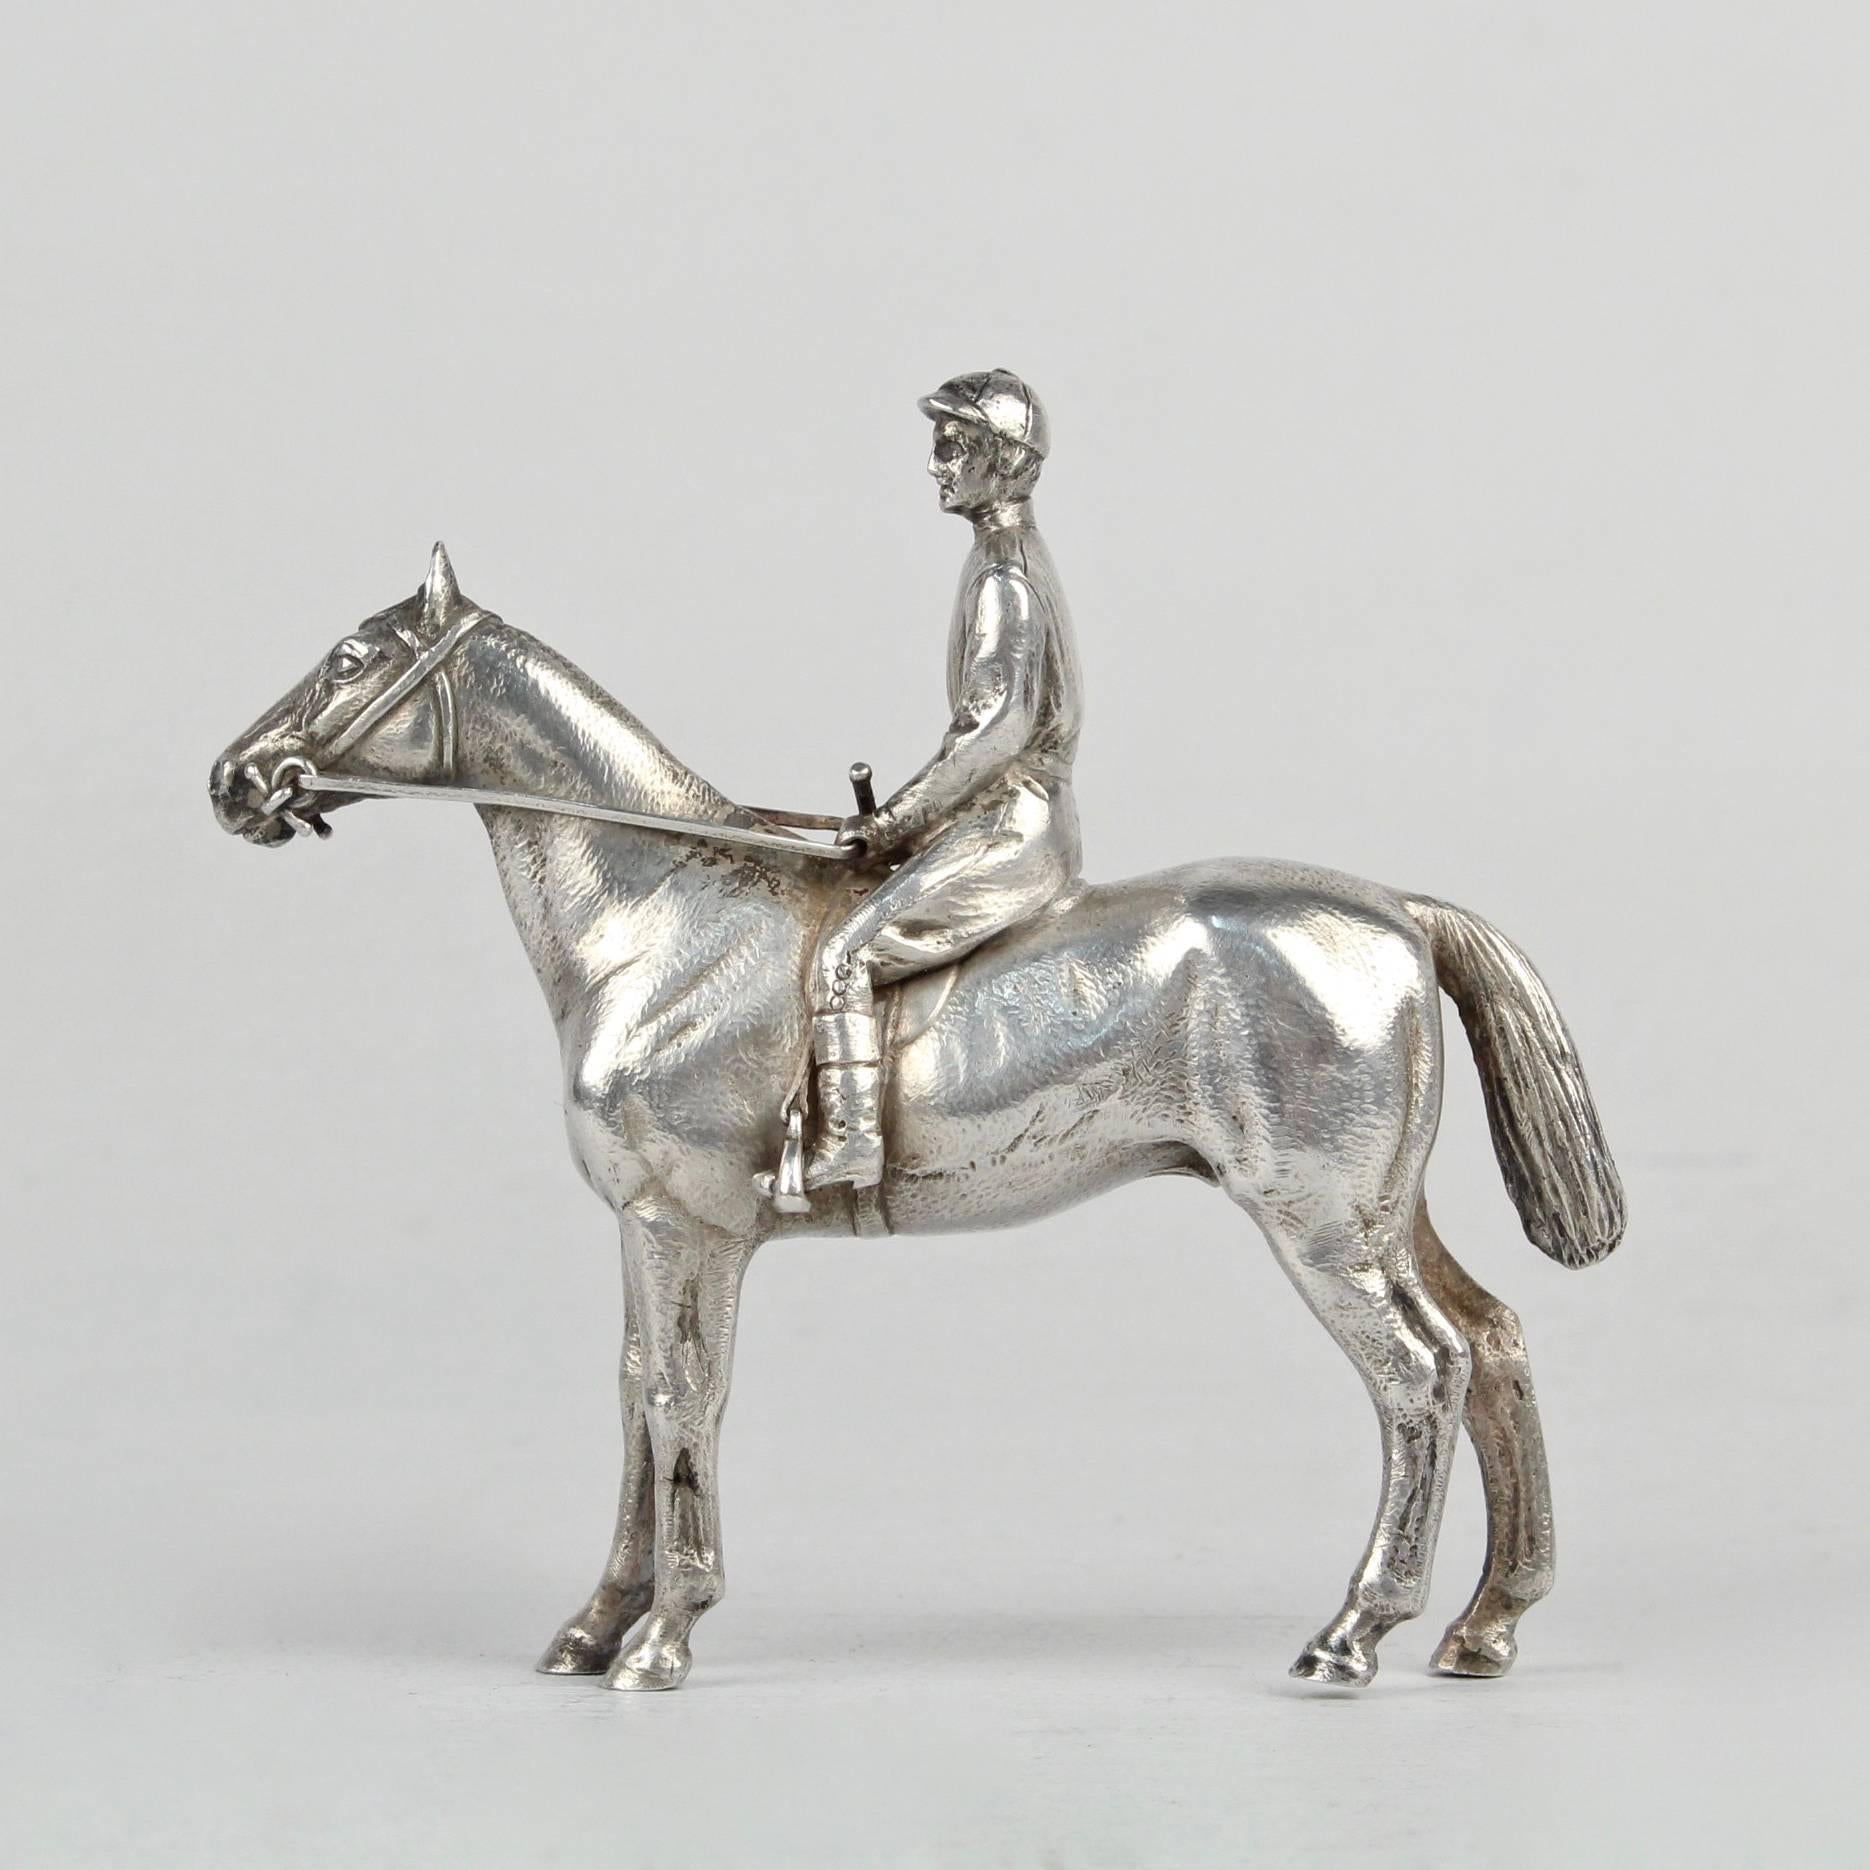 Une sculpture de cheval et de jockey en argent très finement moulée. 

Le cheval et le jockey sont représentés au repos.

La sculpture n'est pas marquée. Nous pensons que la finesse de l'argent est celle d'une pièce de monnaie ou d'une pièce